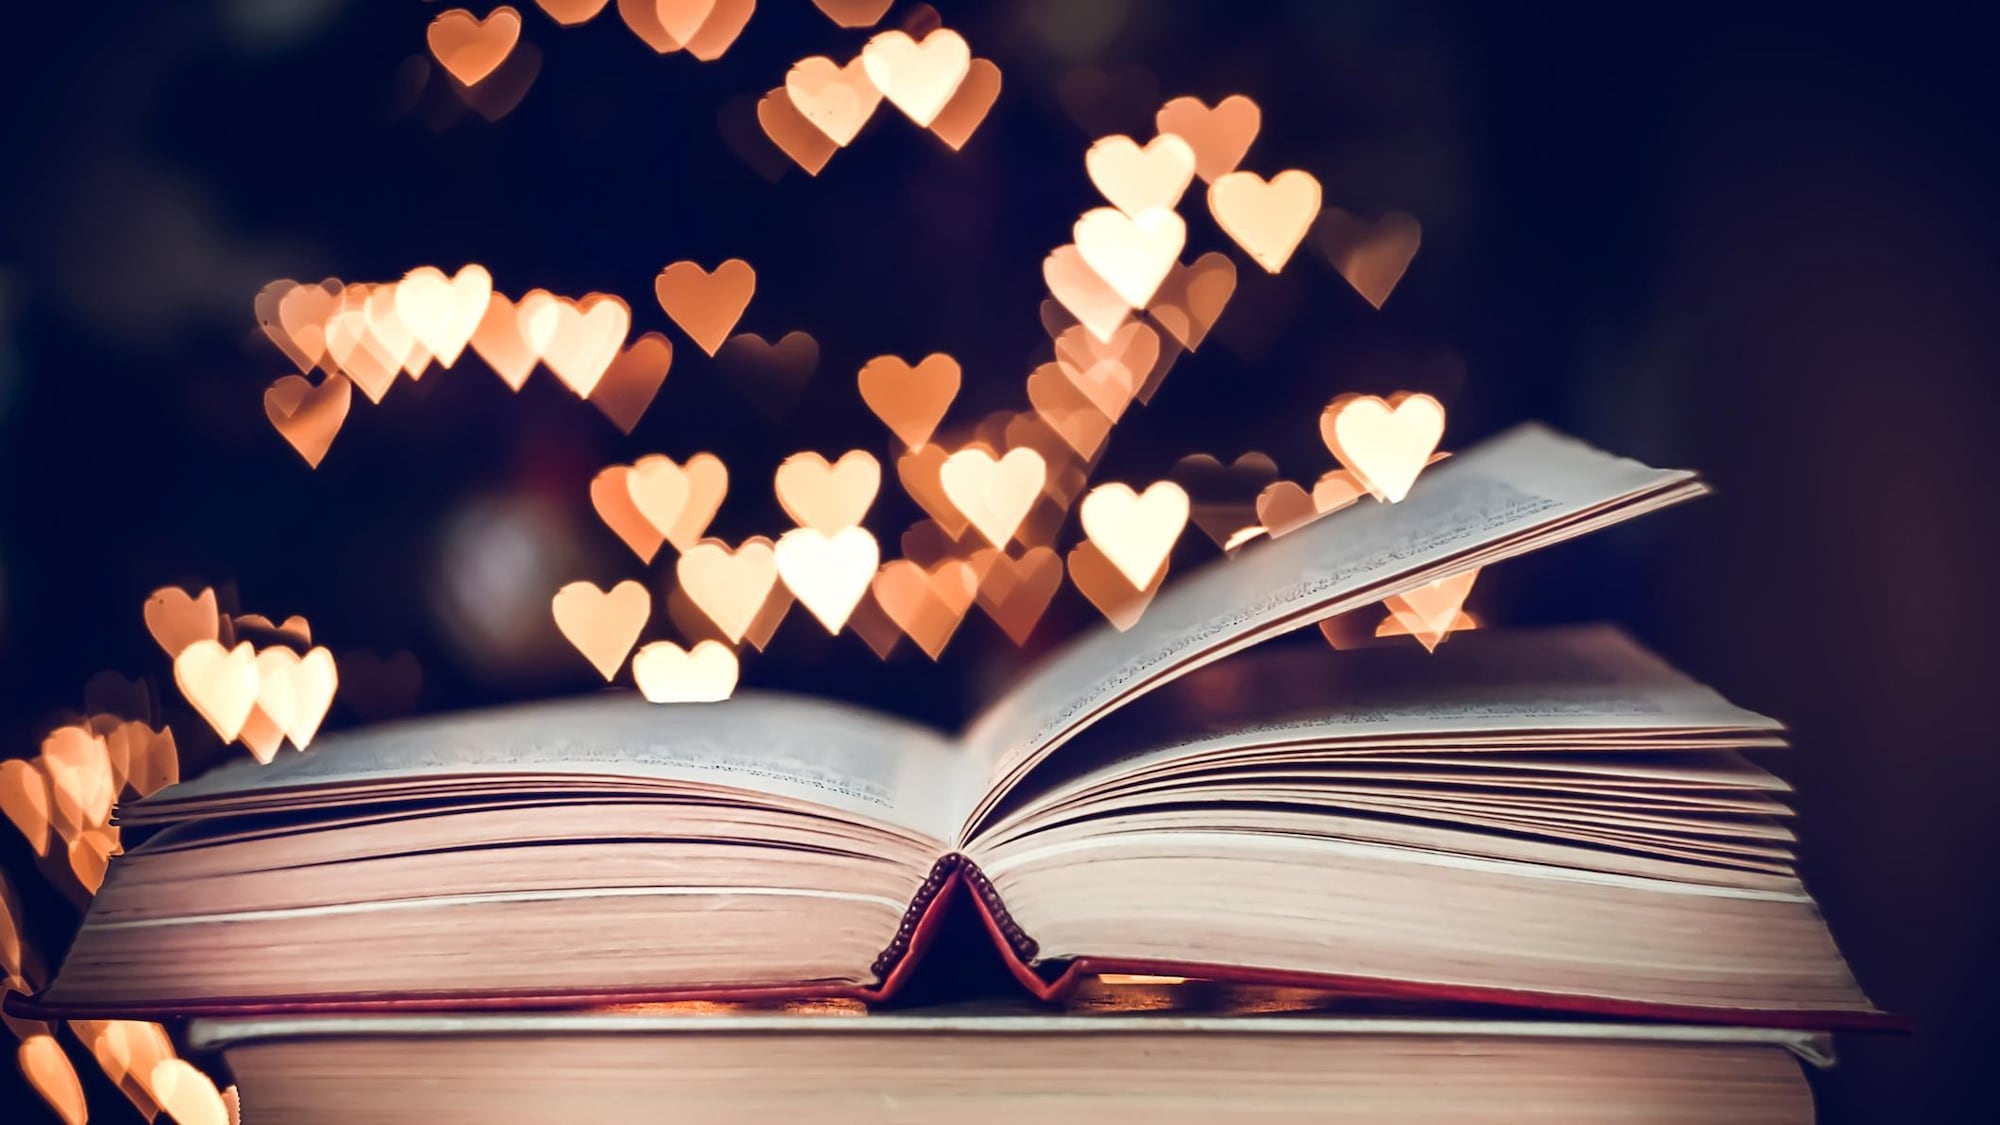 Des coeurs illuminés planent au-dessus de livres.